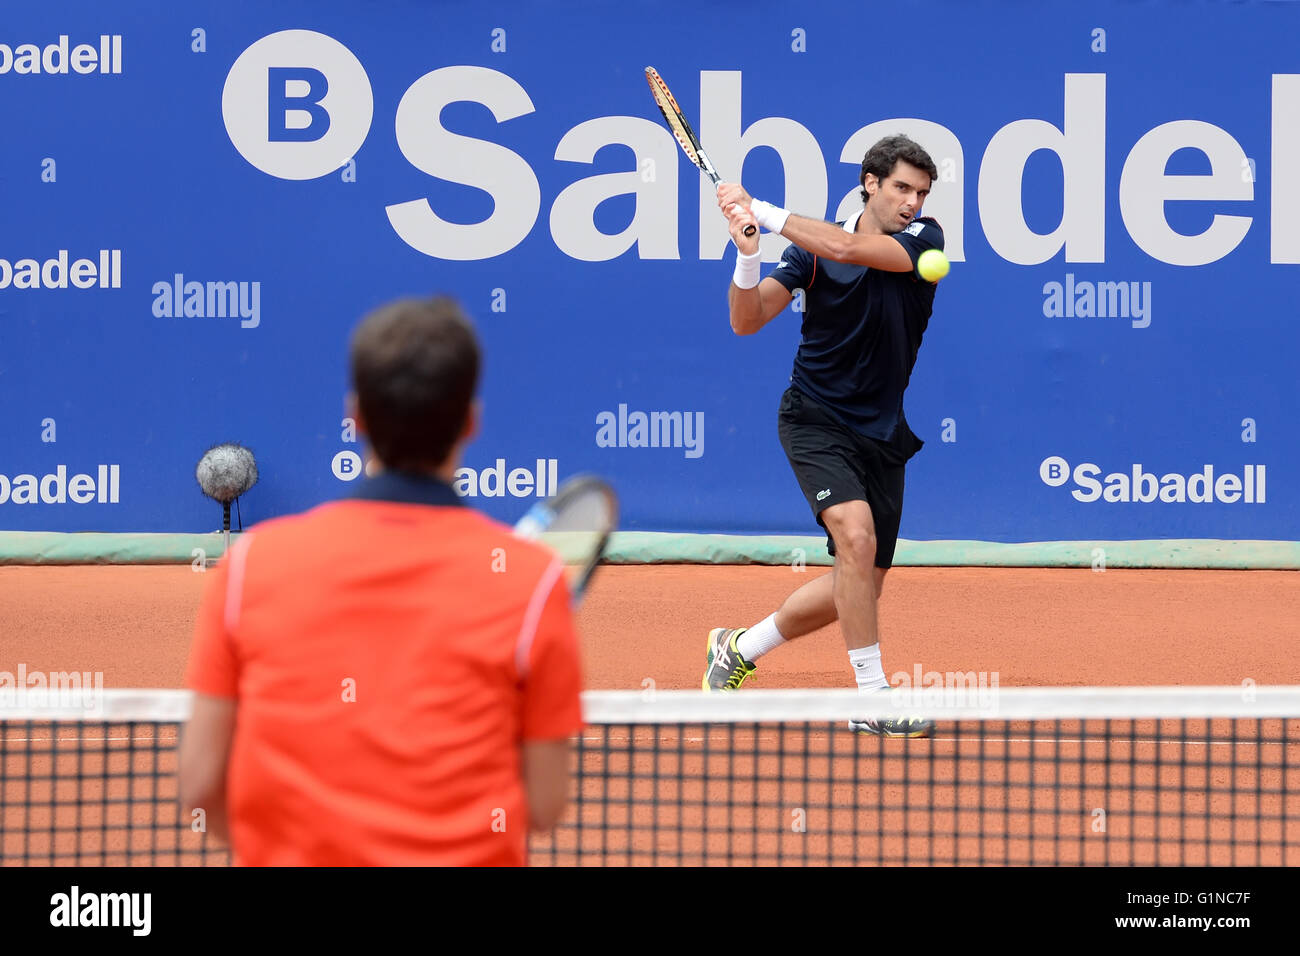 Barcelone - 20 avr : Pablo Andujar (joueur de tennis) joue à l'ATP Barcelone ouvert. Banque D'Images